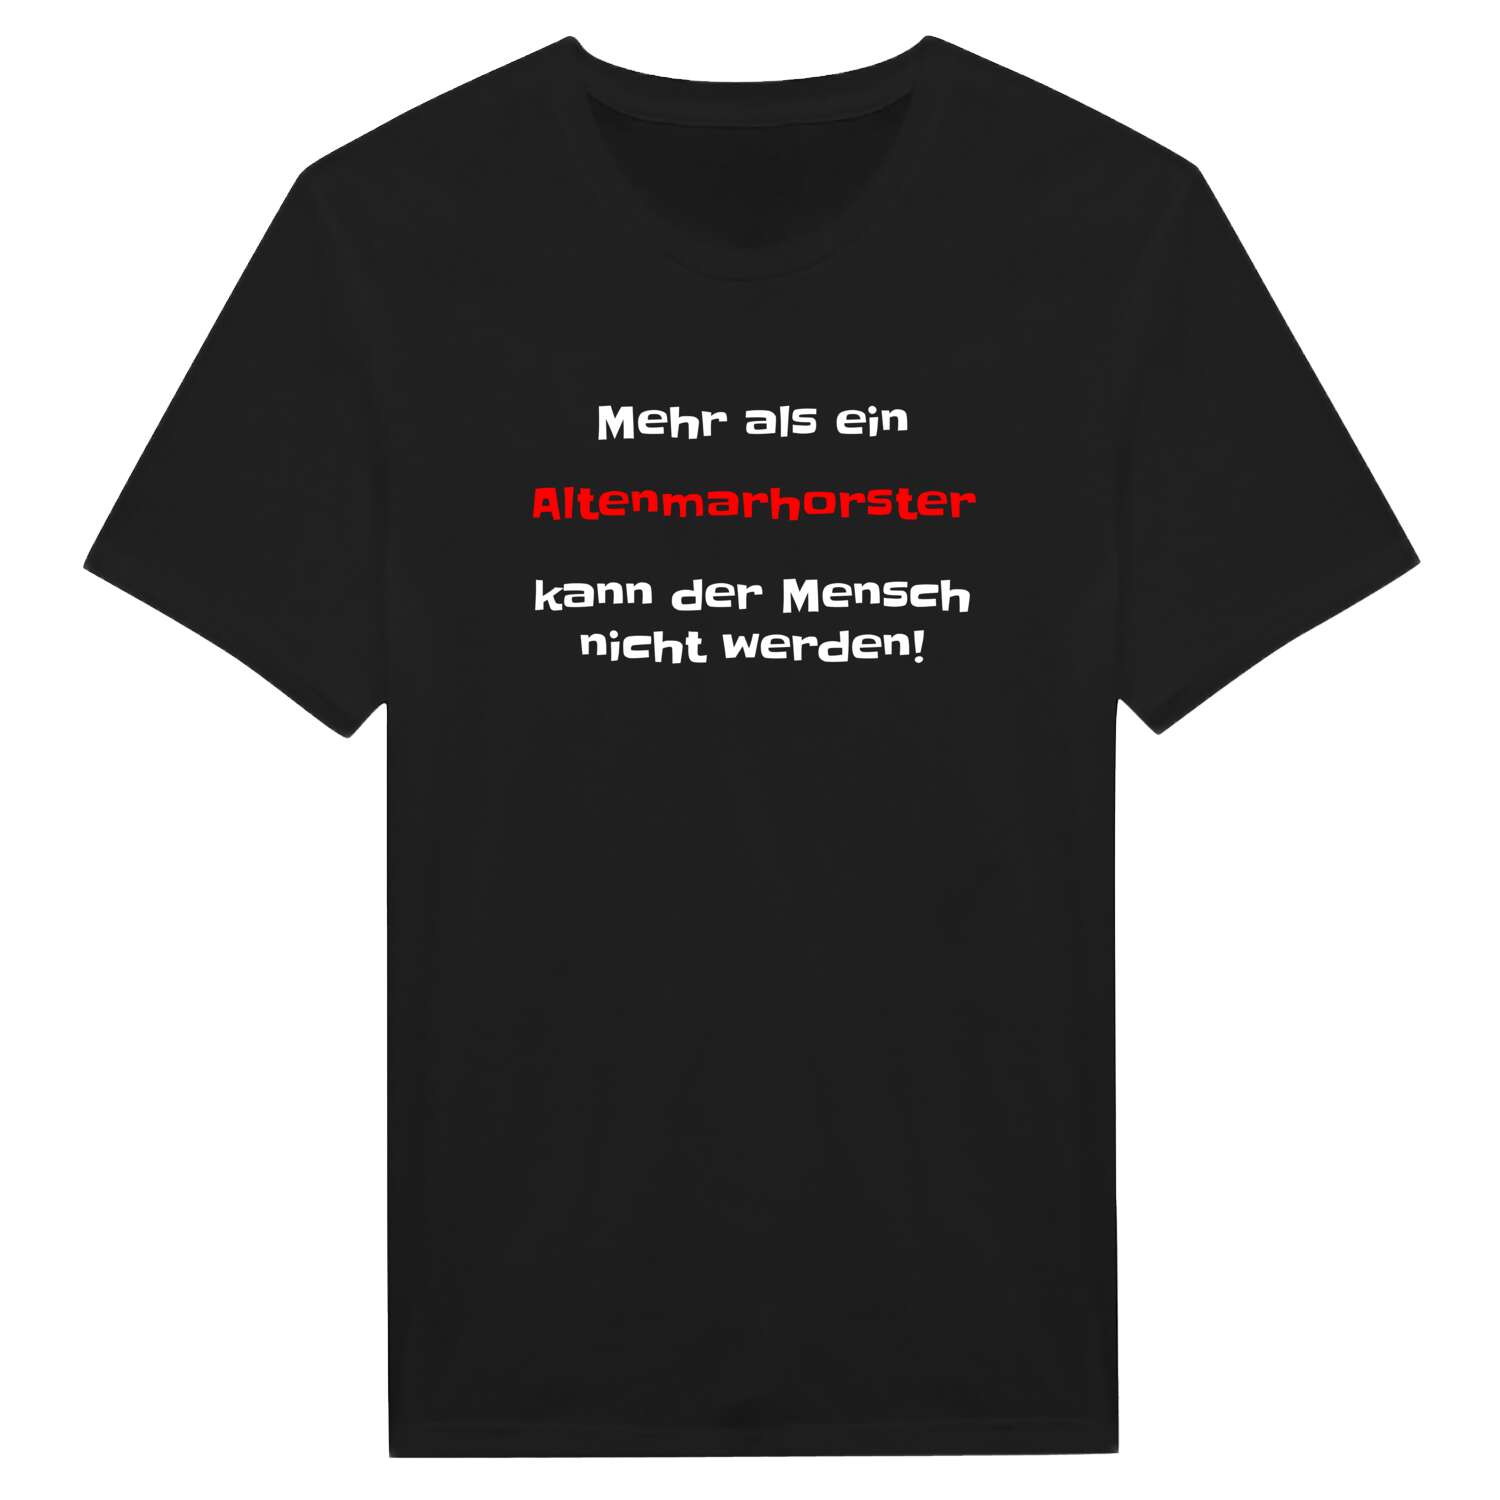 Altenmarhorst T-Shirt »Mehr als ein«